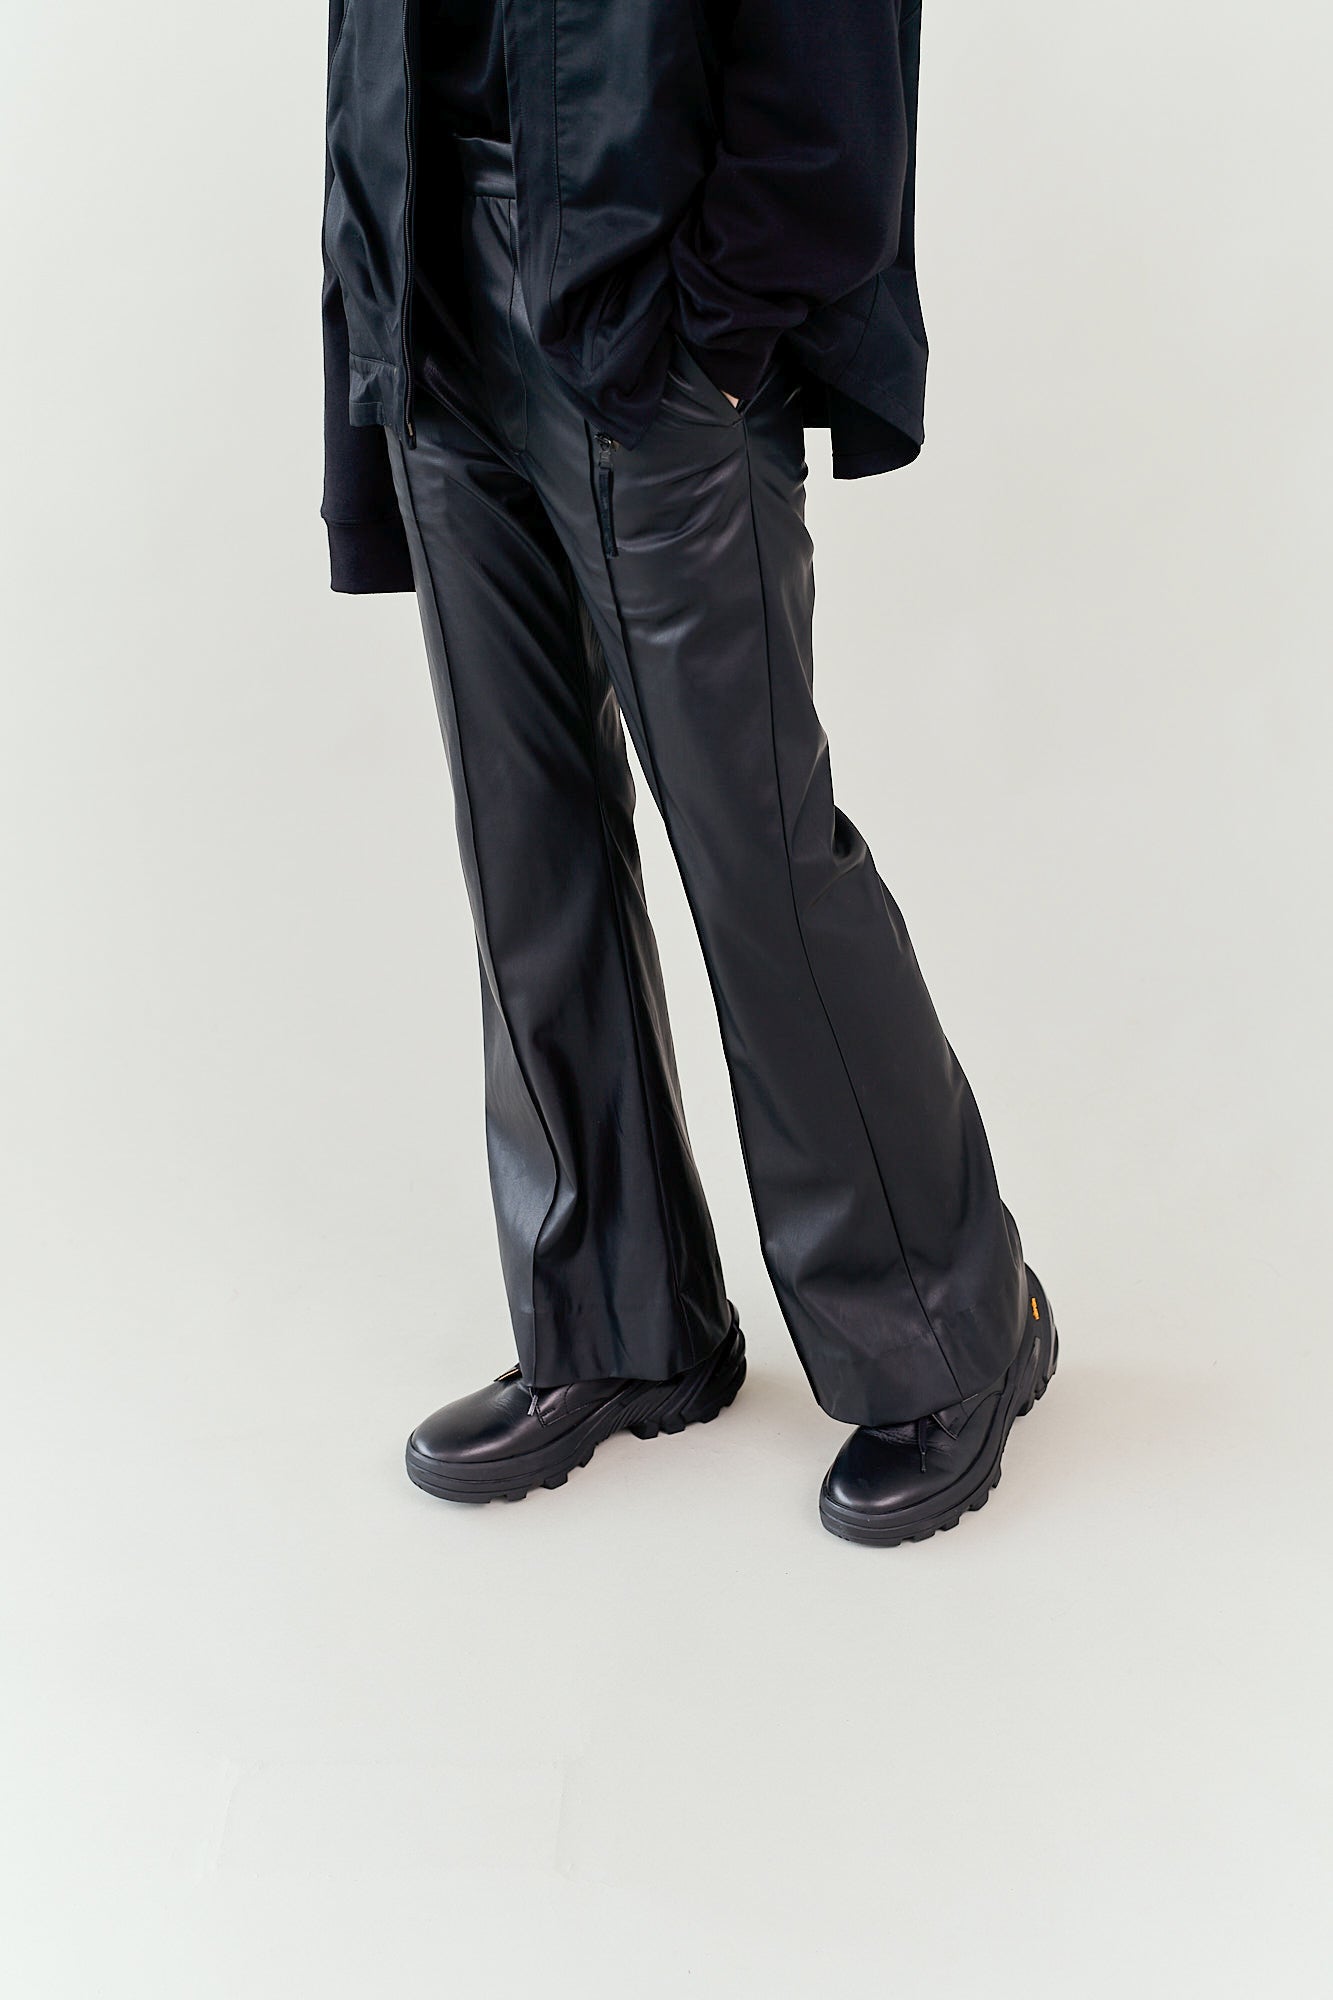 日本製造ryo takashima pants leather 2 パンツ